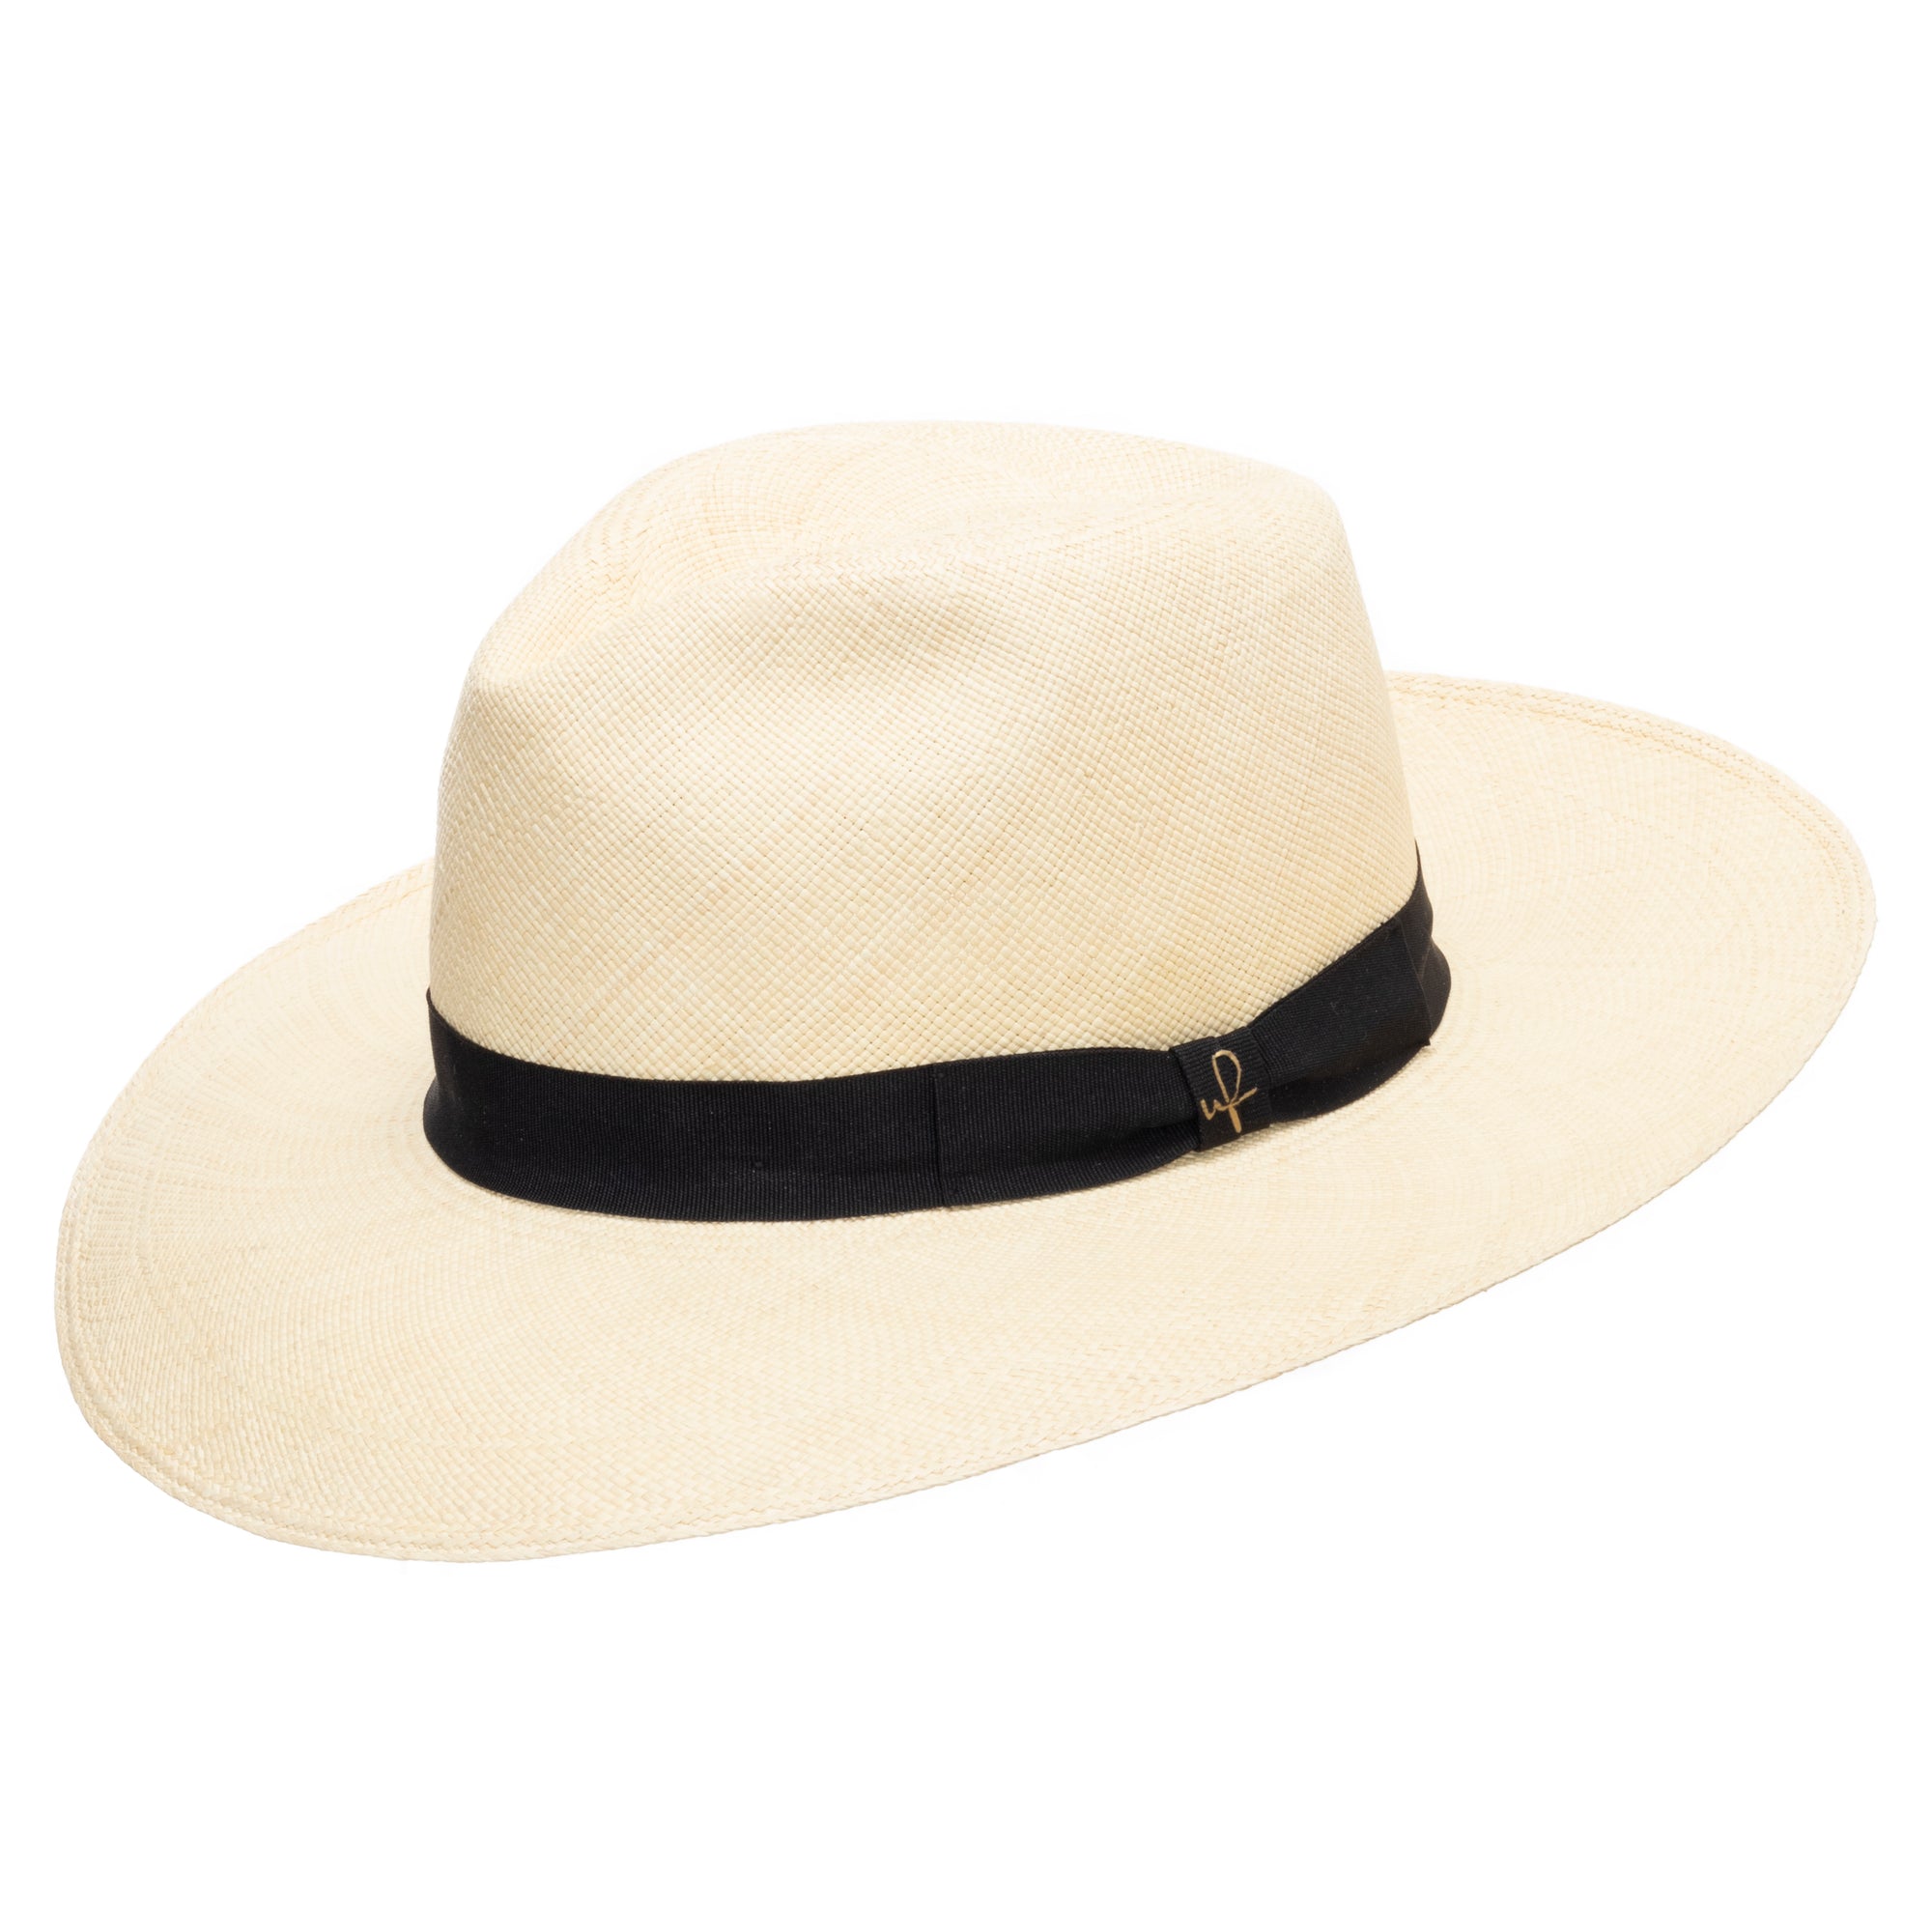 Panama Hats Page 3 - Ultrafino